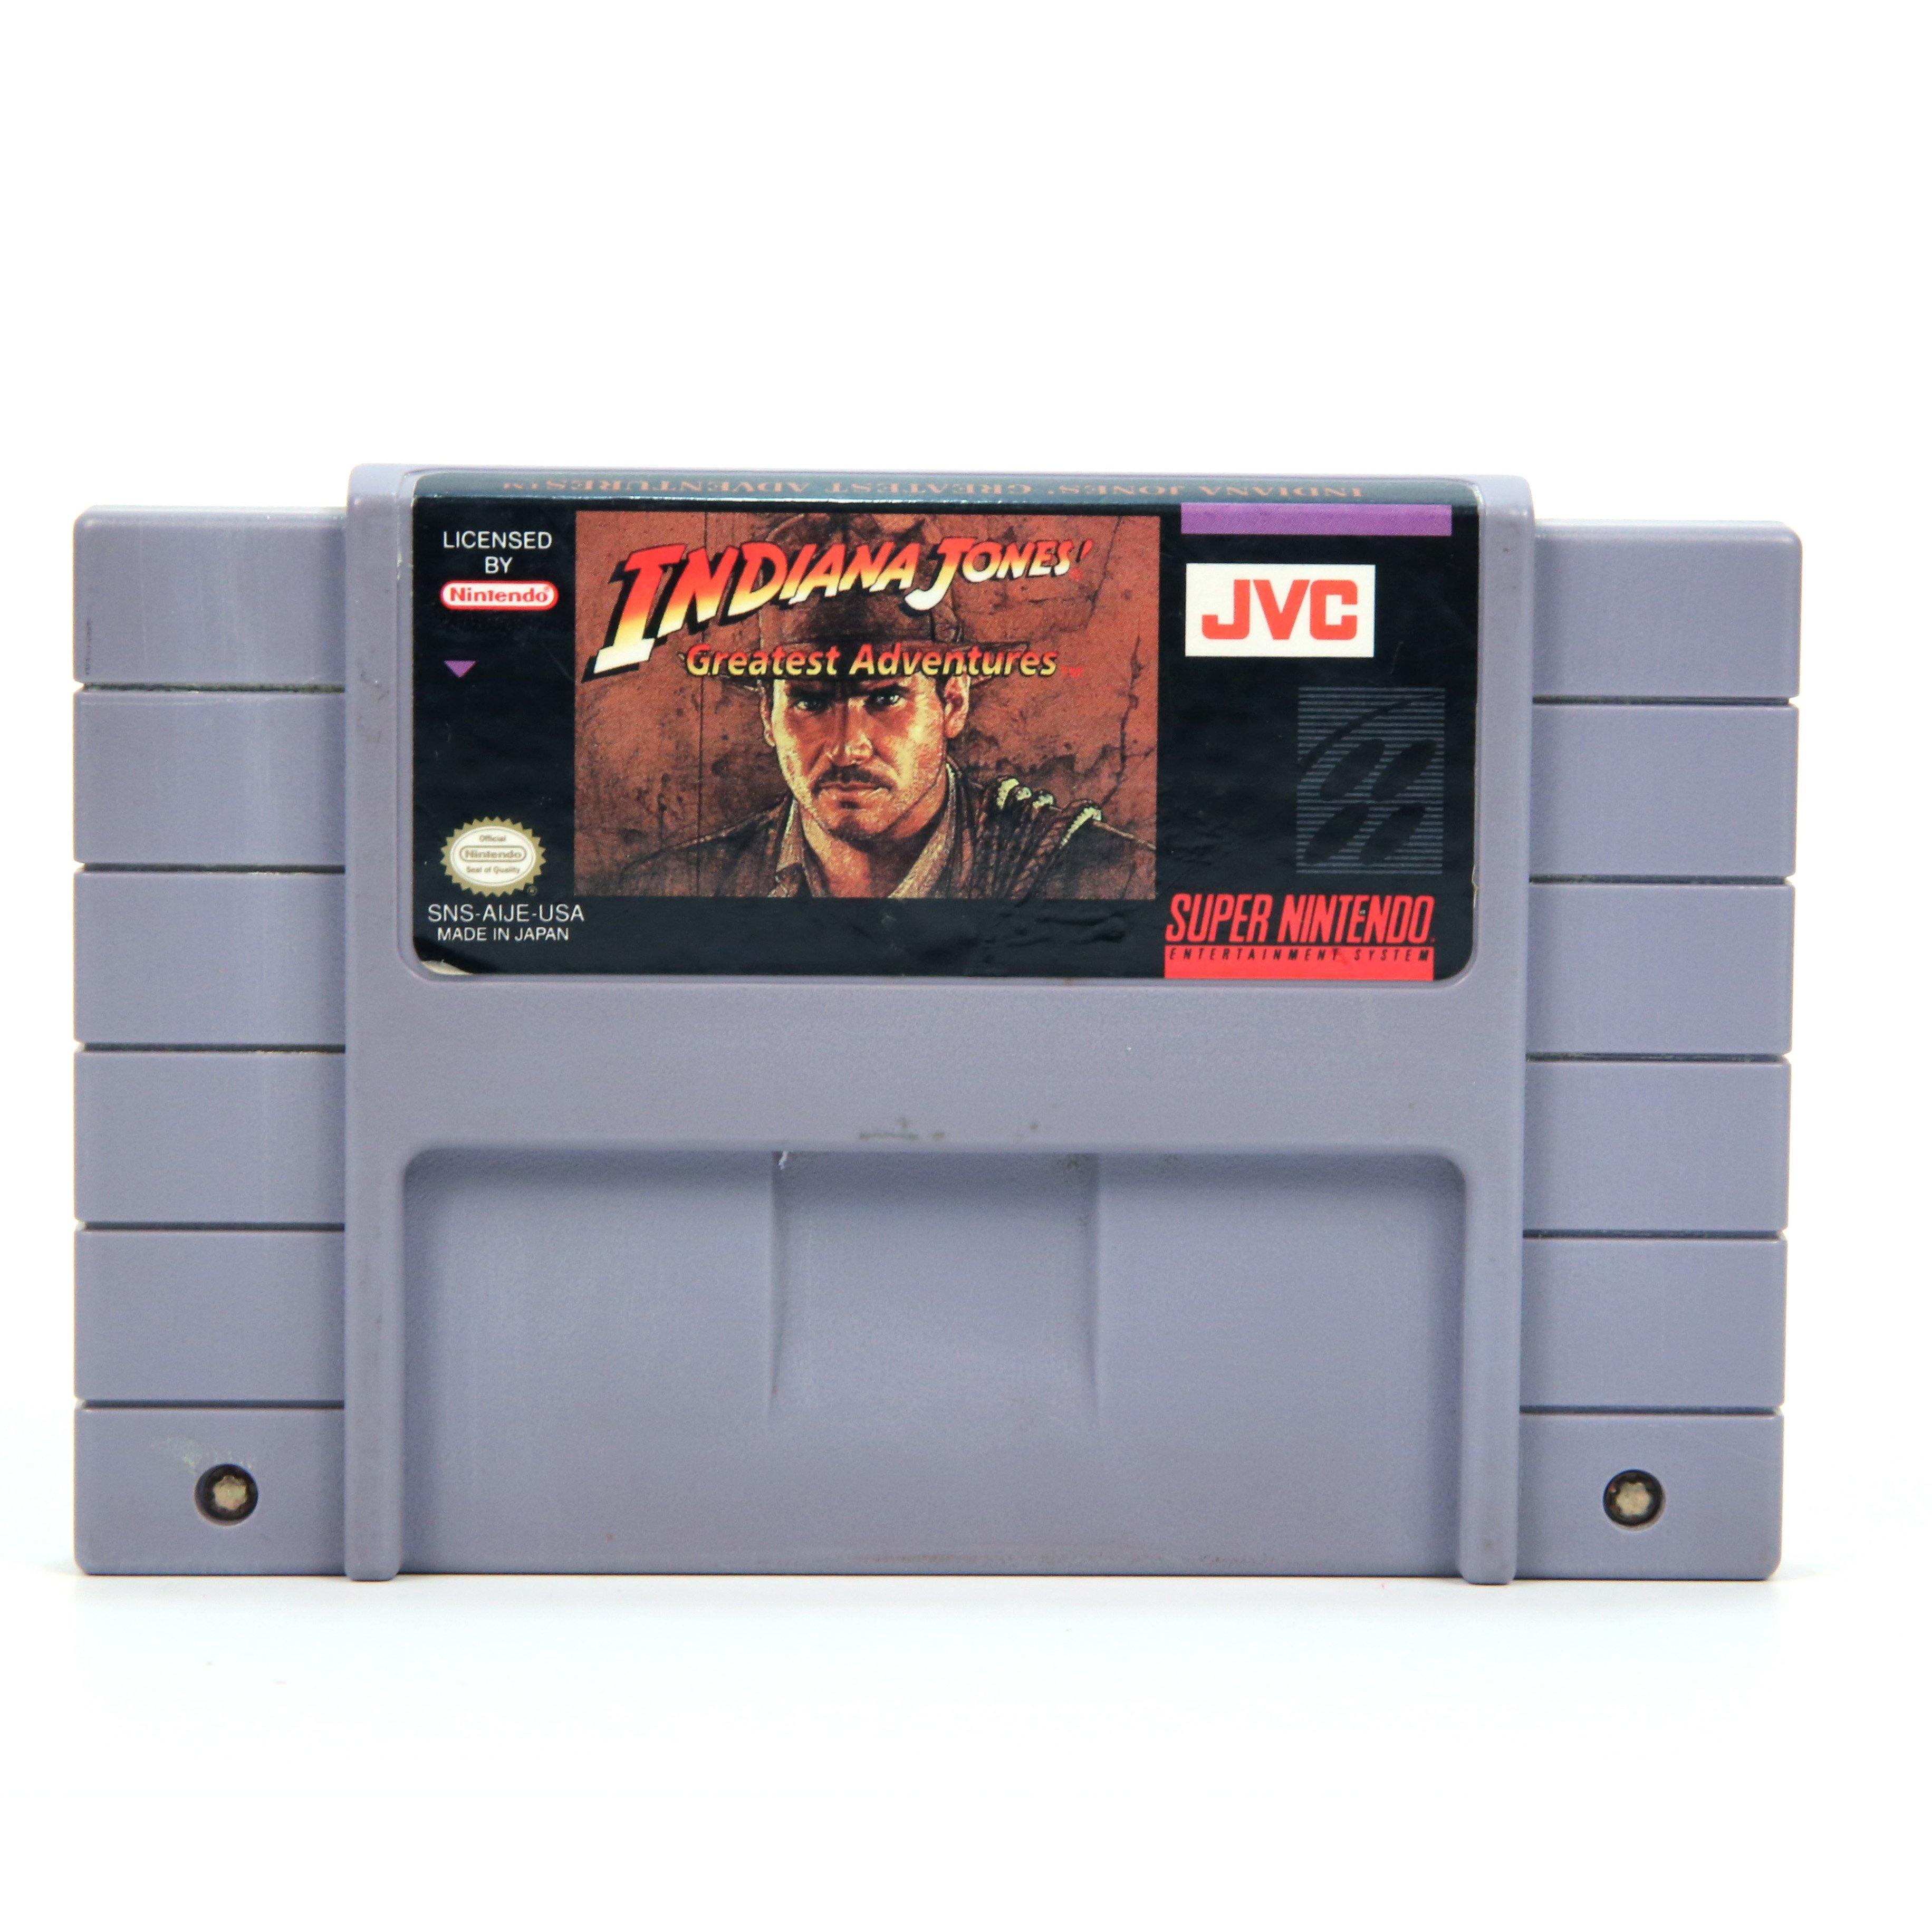 Indiana Jones Greatest Adventures - Super Nintendo